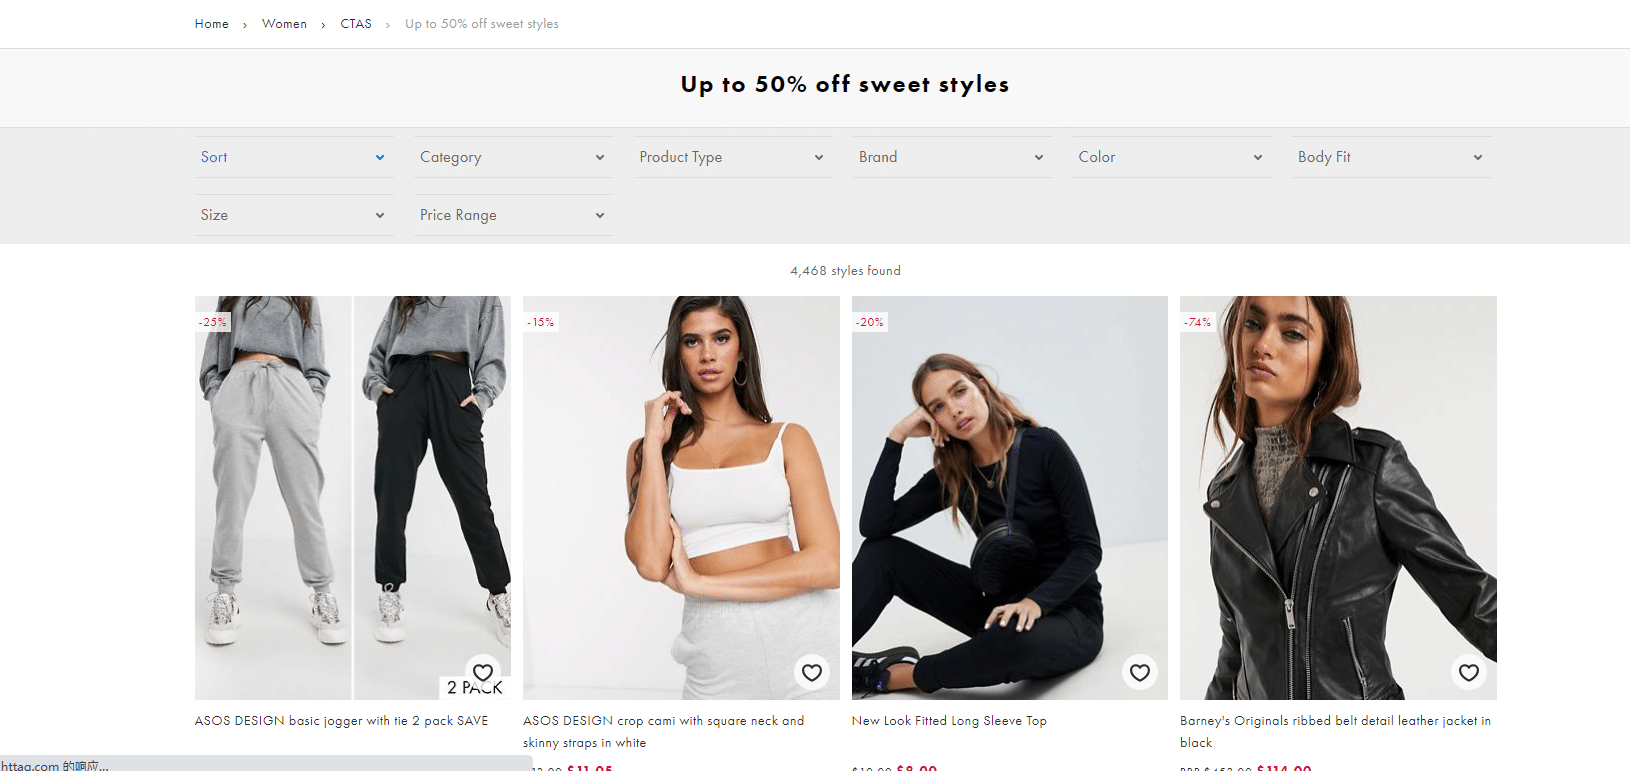 asos.com 50% off offer